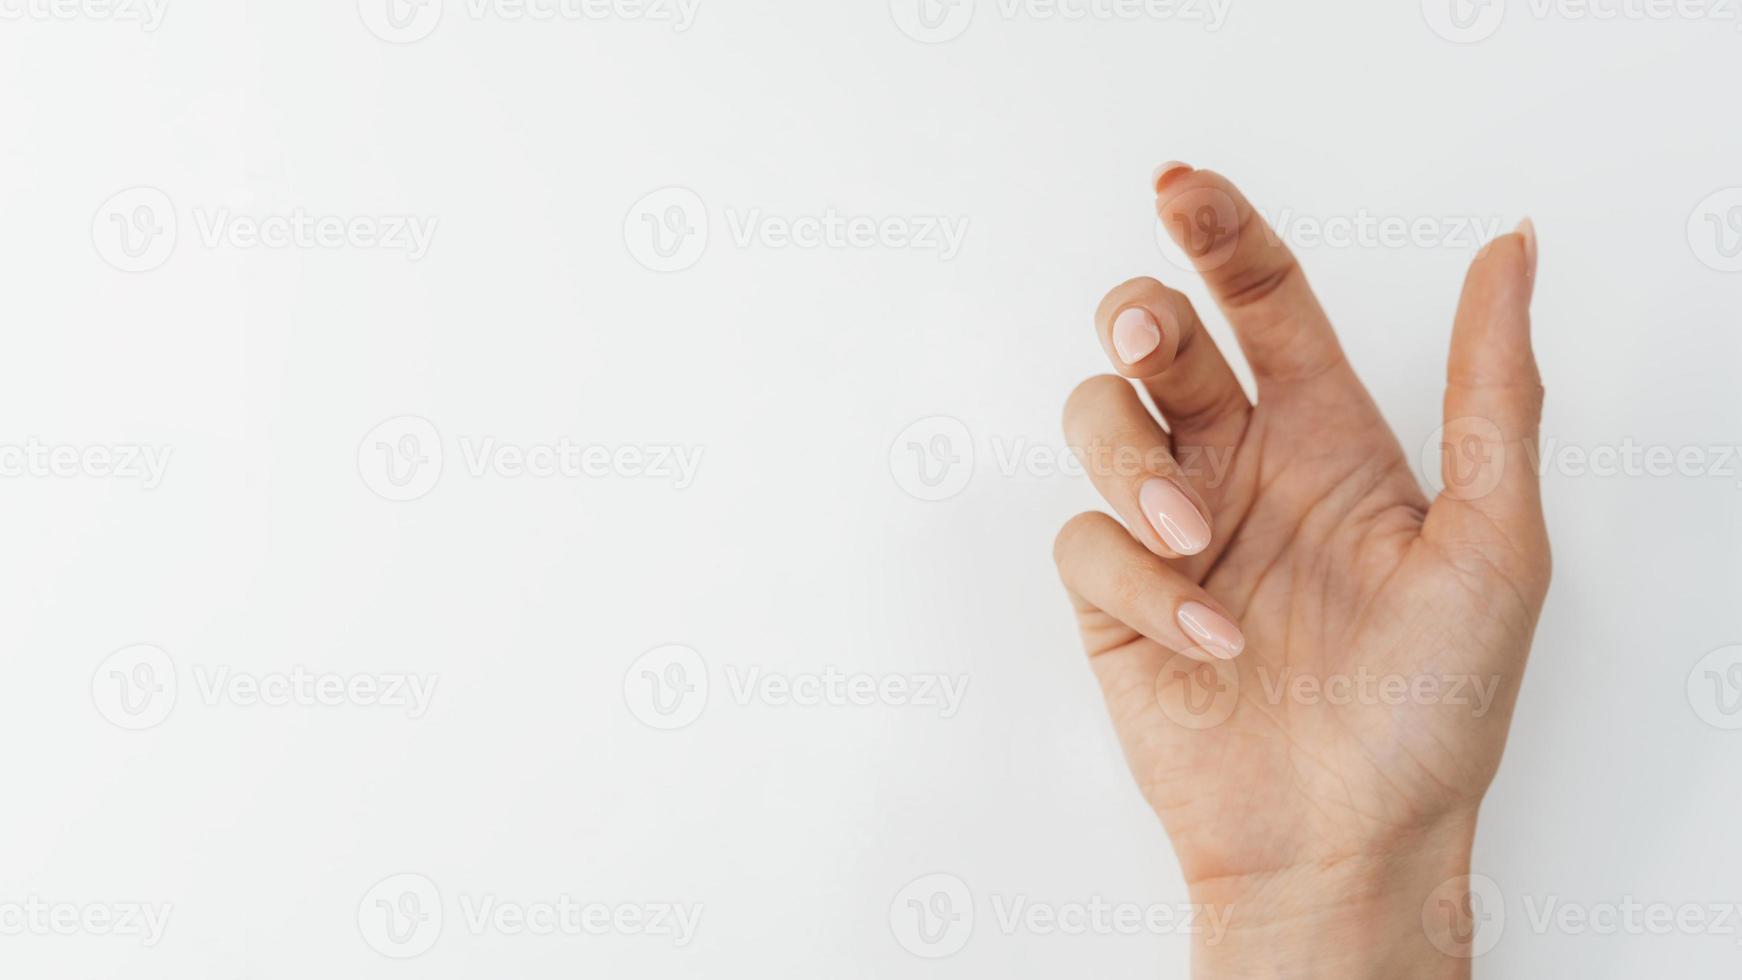 gezonde mooie manicure plat lag op witte achtergrond foto